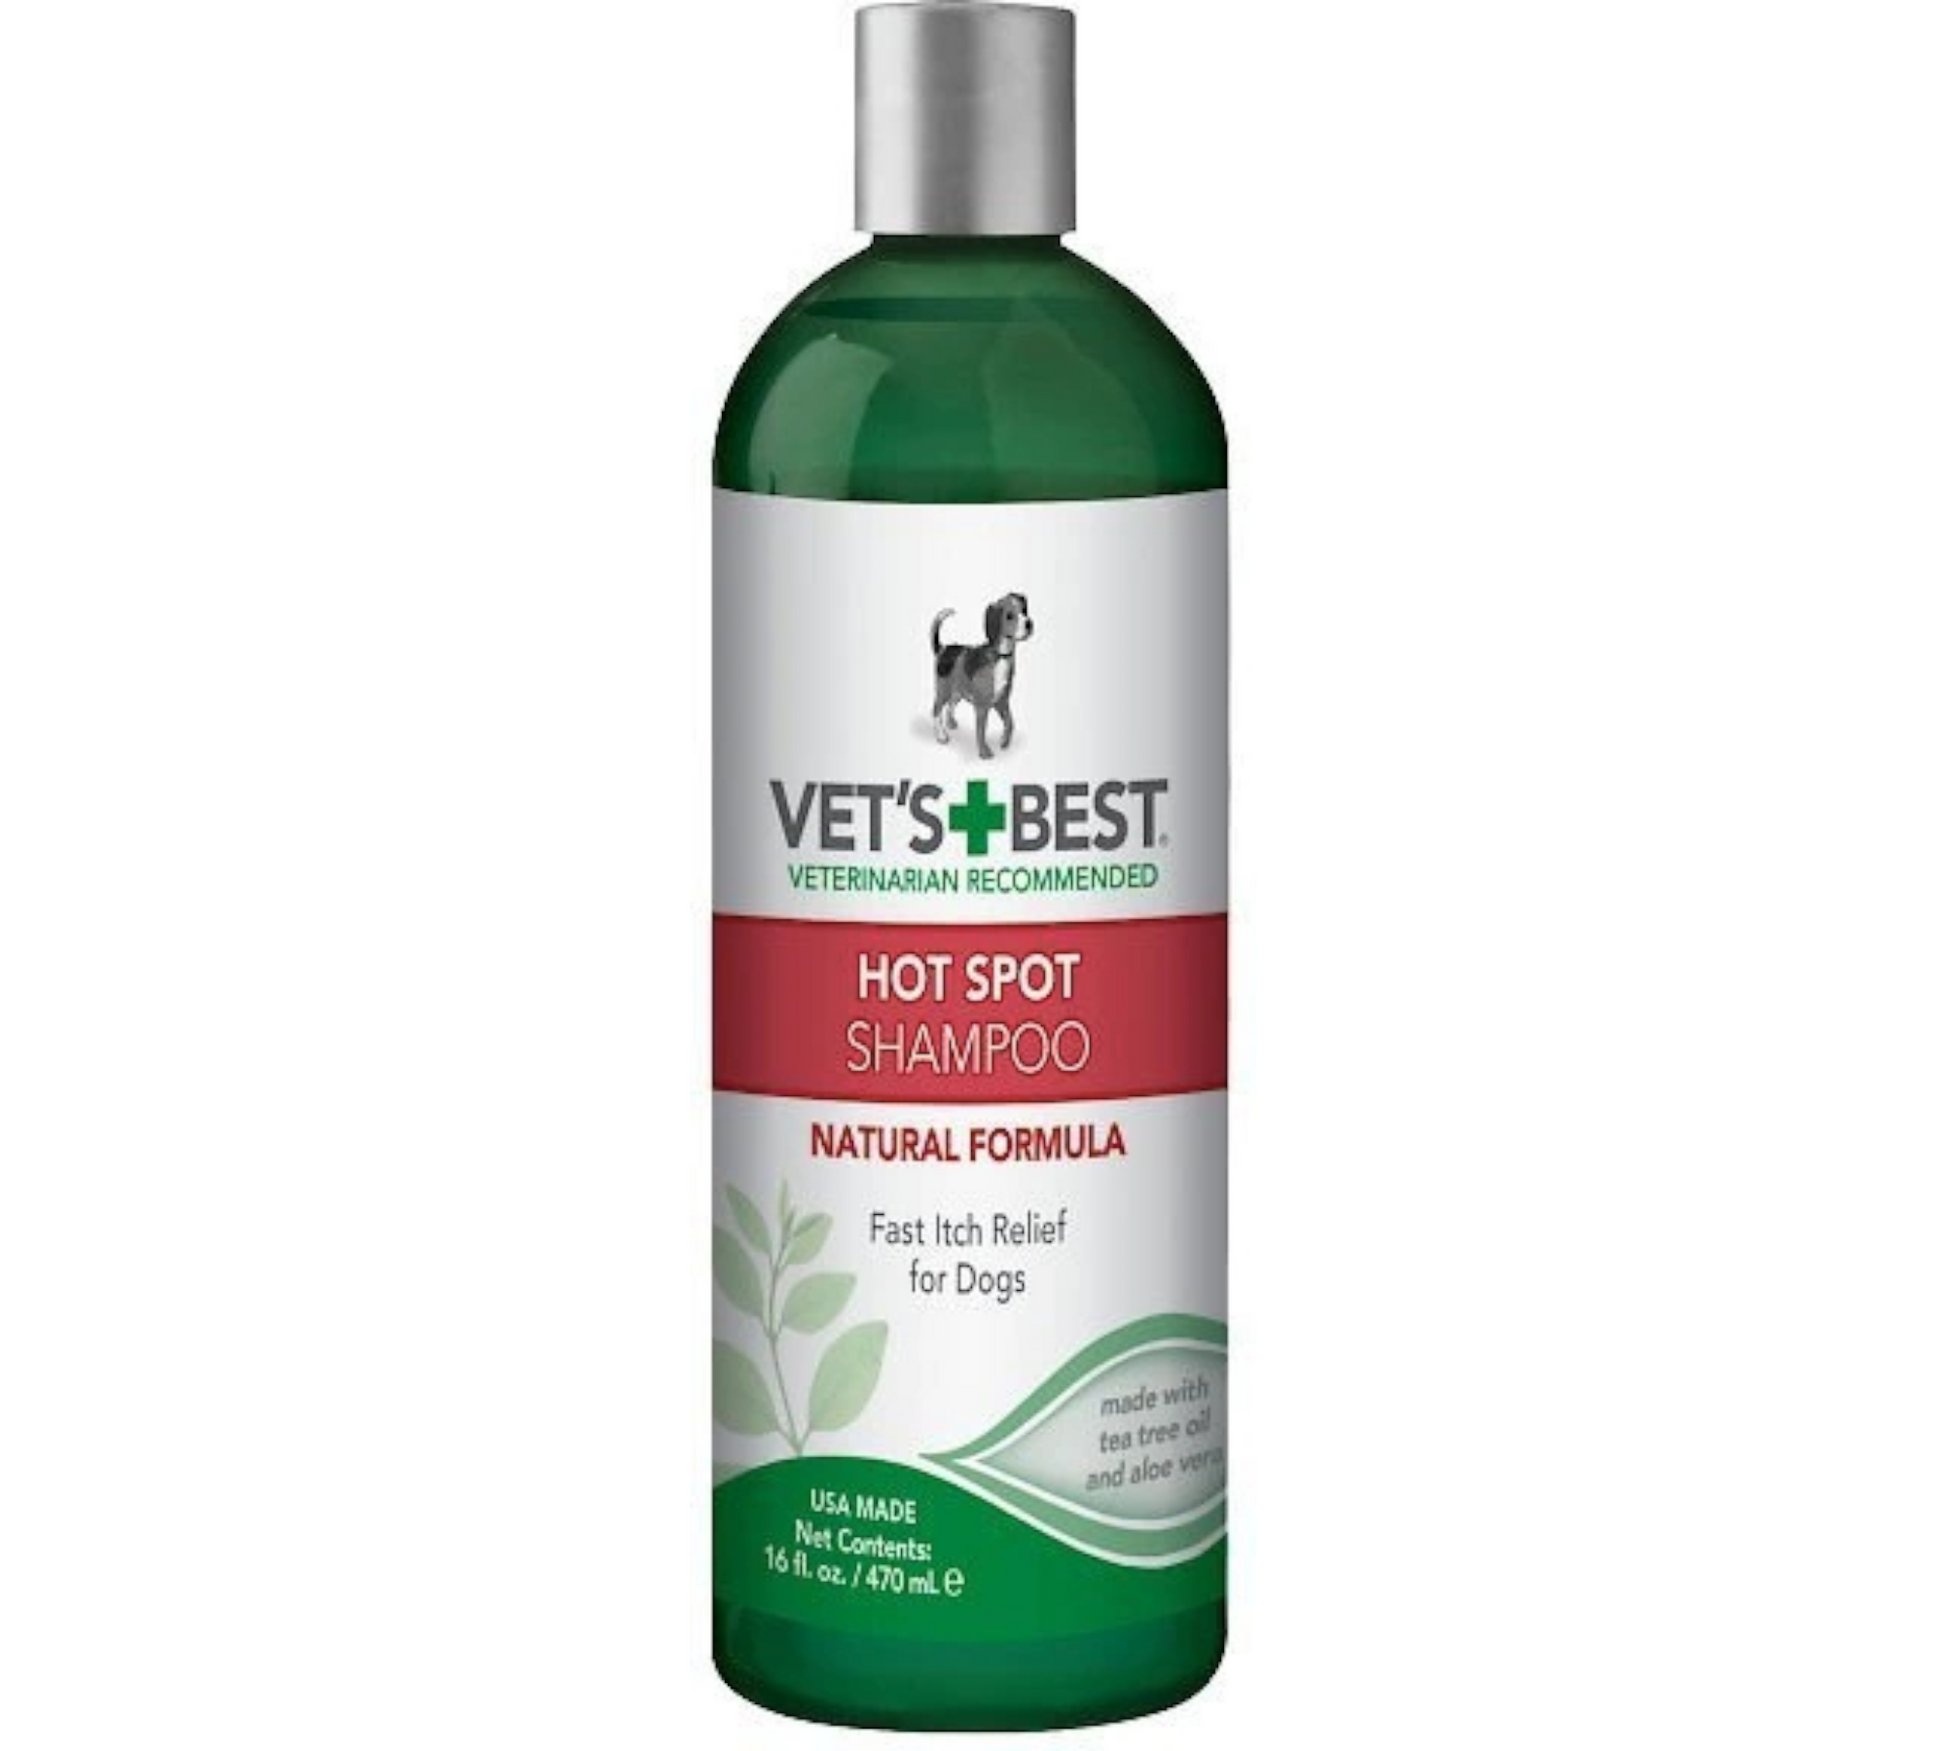 Canine's World Dog Shampoos Vet's Best Hot Spot Shampoo for Dogs, Vet's Best